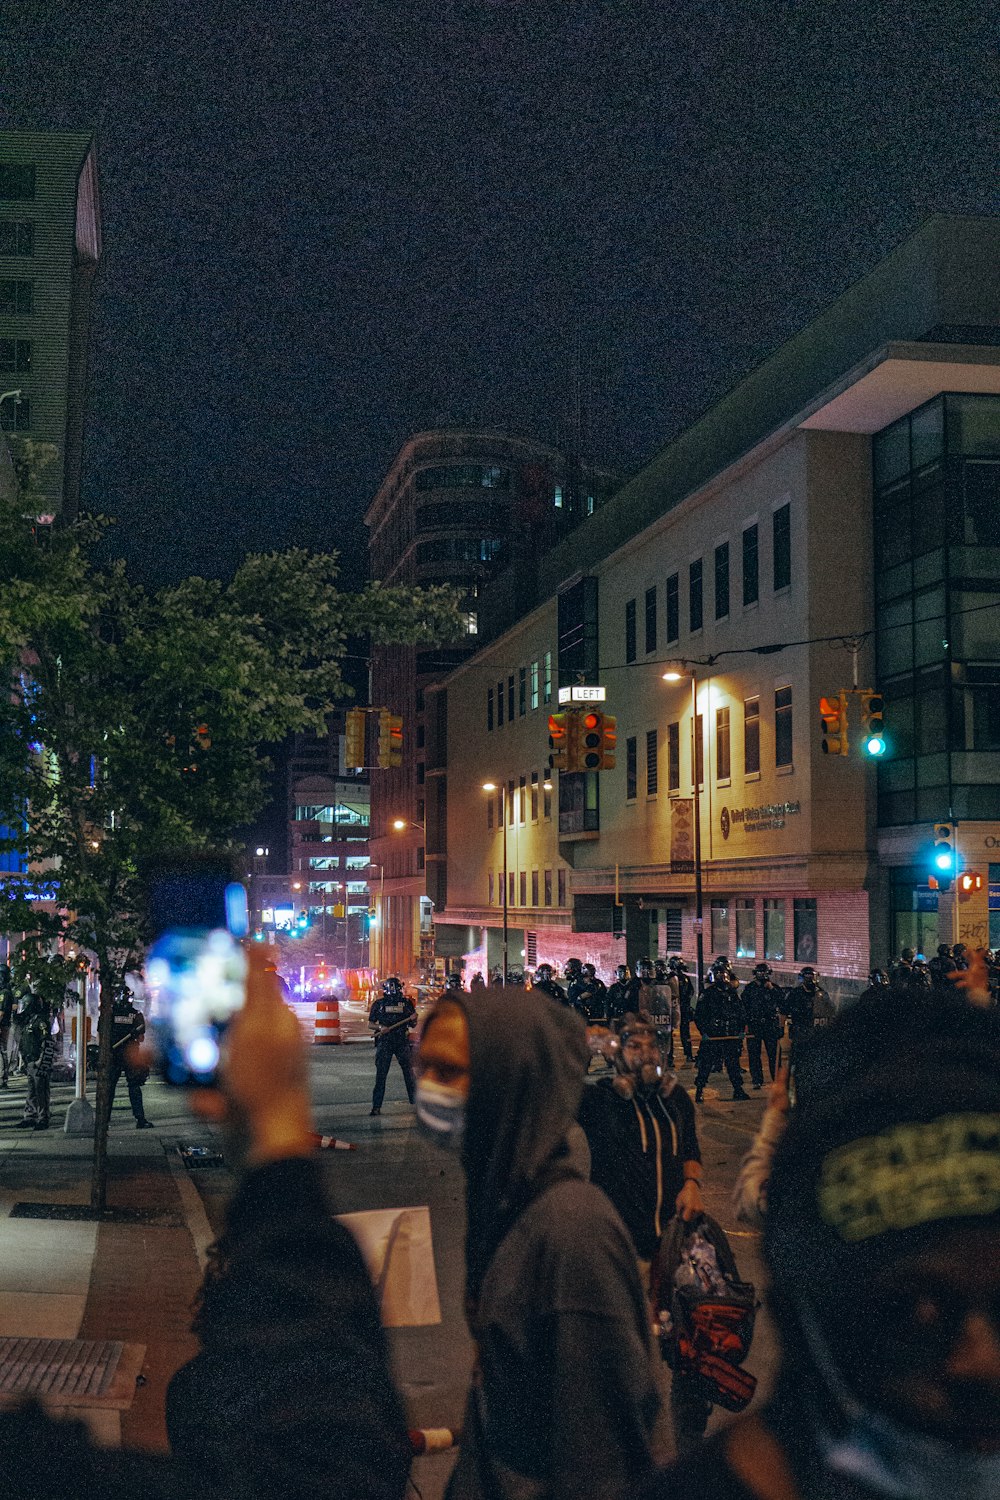 persone che camminano per strada durante la notte